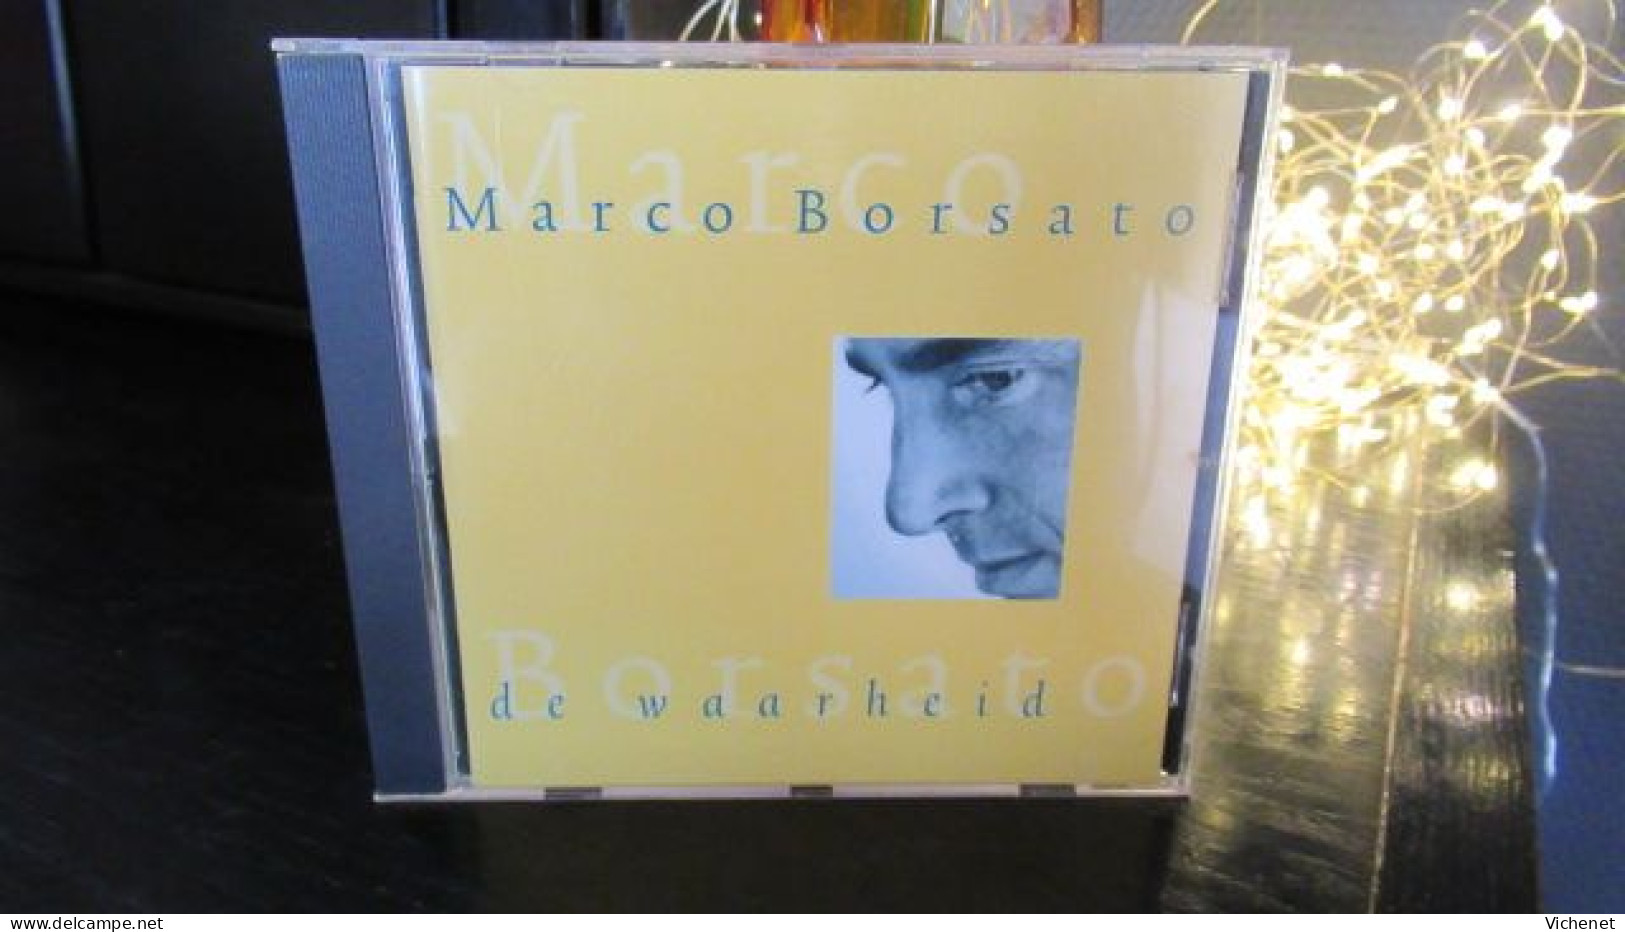 Marco Borsato – De Waarheid - Other - Dutch Music